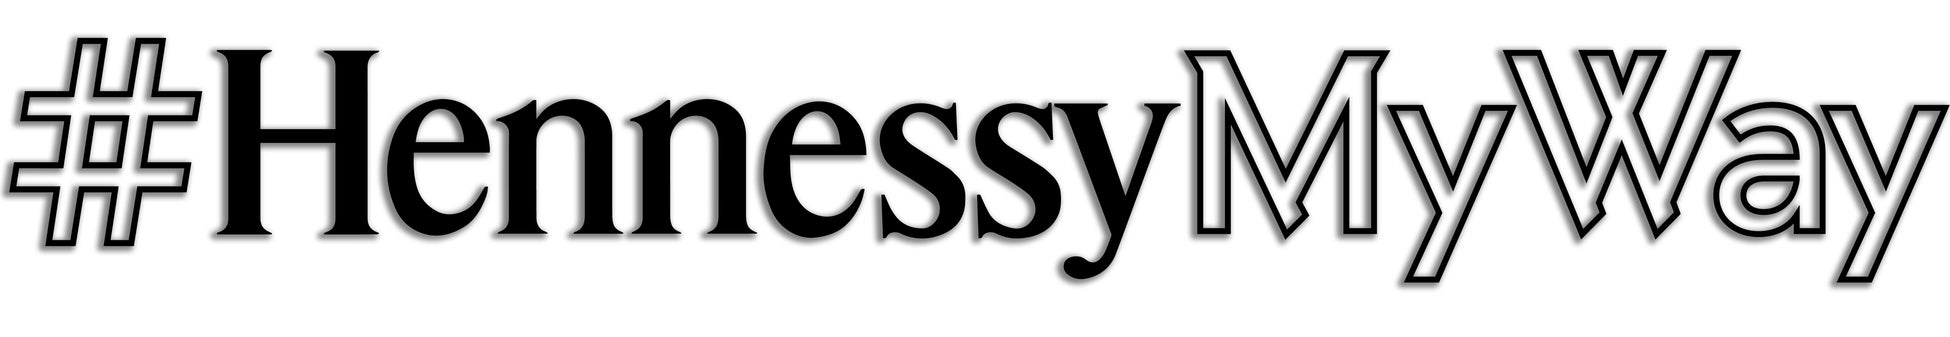 ヘネシー グローバル カクテル コンペティション「#HennessyMyWay」（ヘネシー マイウェイ）日本代表の「APOTHECA (アポテカ)」髙橋大地さんが世界大会で総合優勝